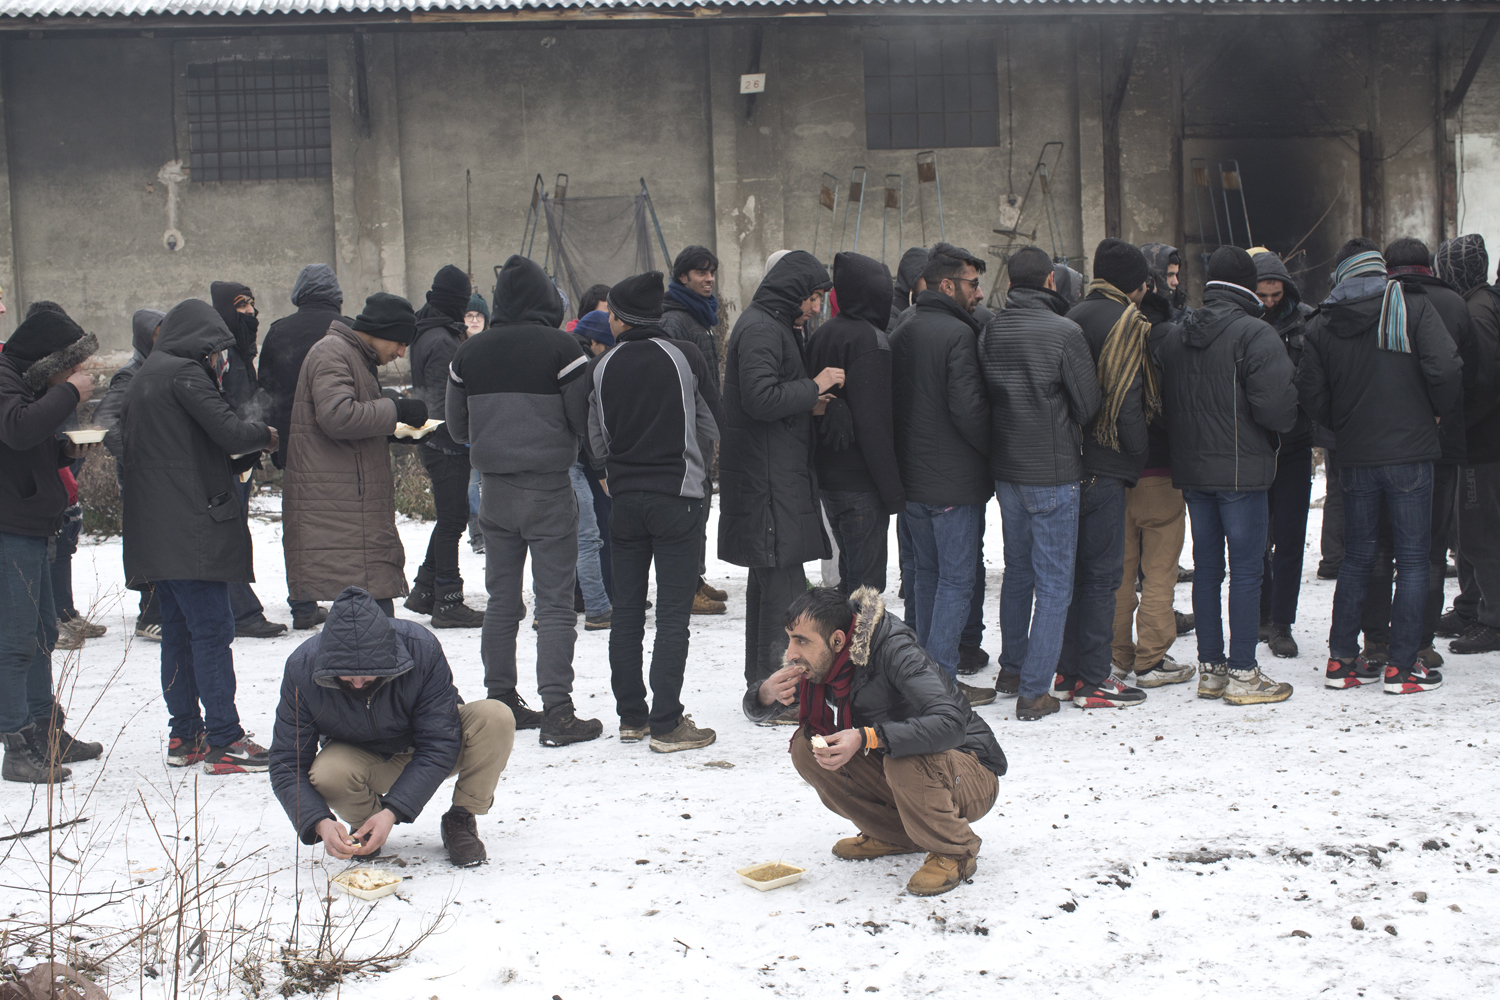 El pasado fin de semana, el termómetro bajó hasta los 16 grados bajo cero en Belgrado, donde el número de refugiados alcanzó los 2.000.